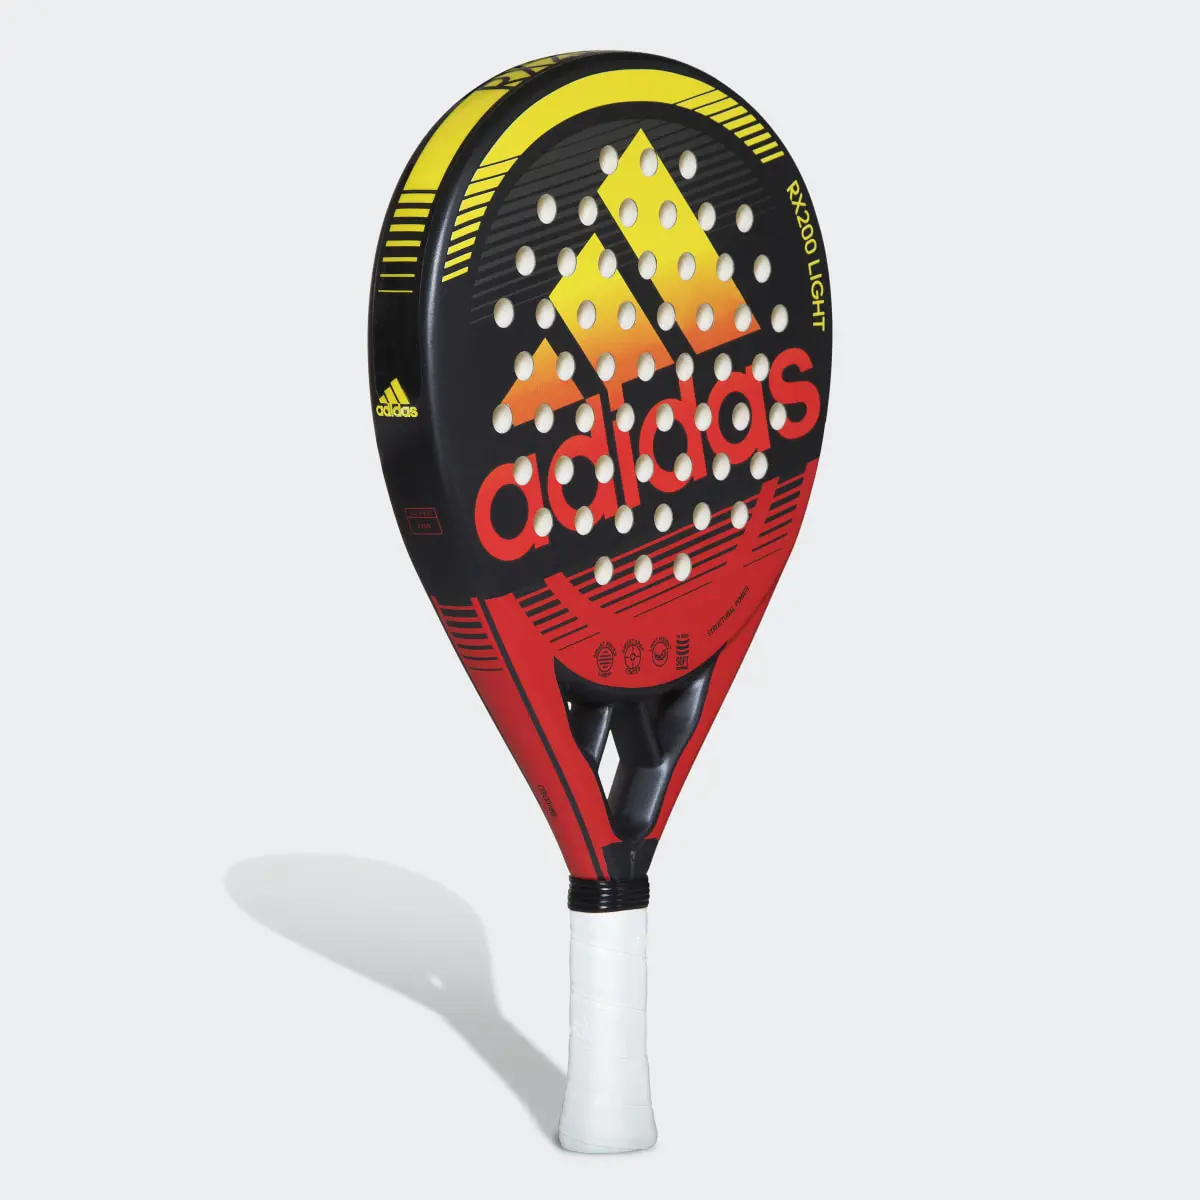 Adidas RX 200 Light Racquet. 3